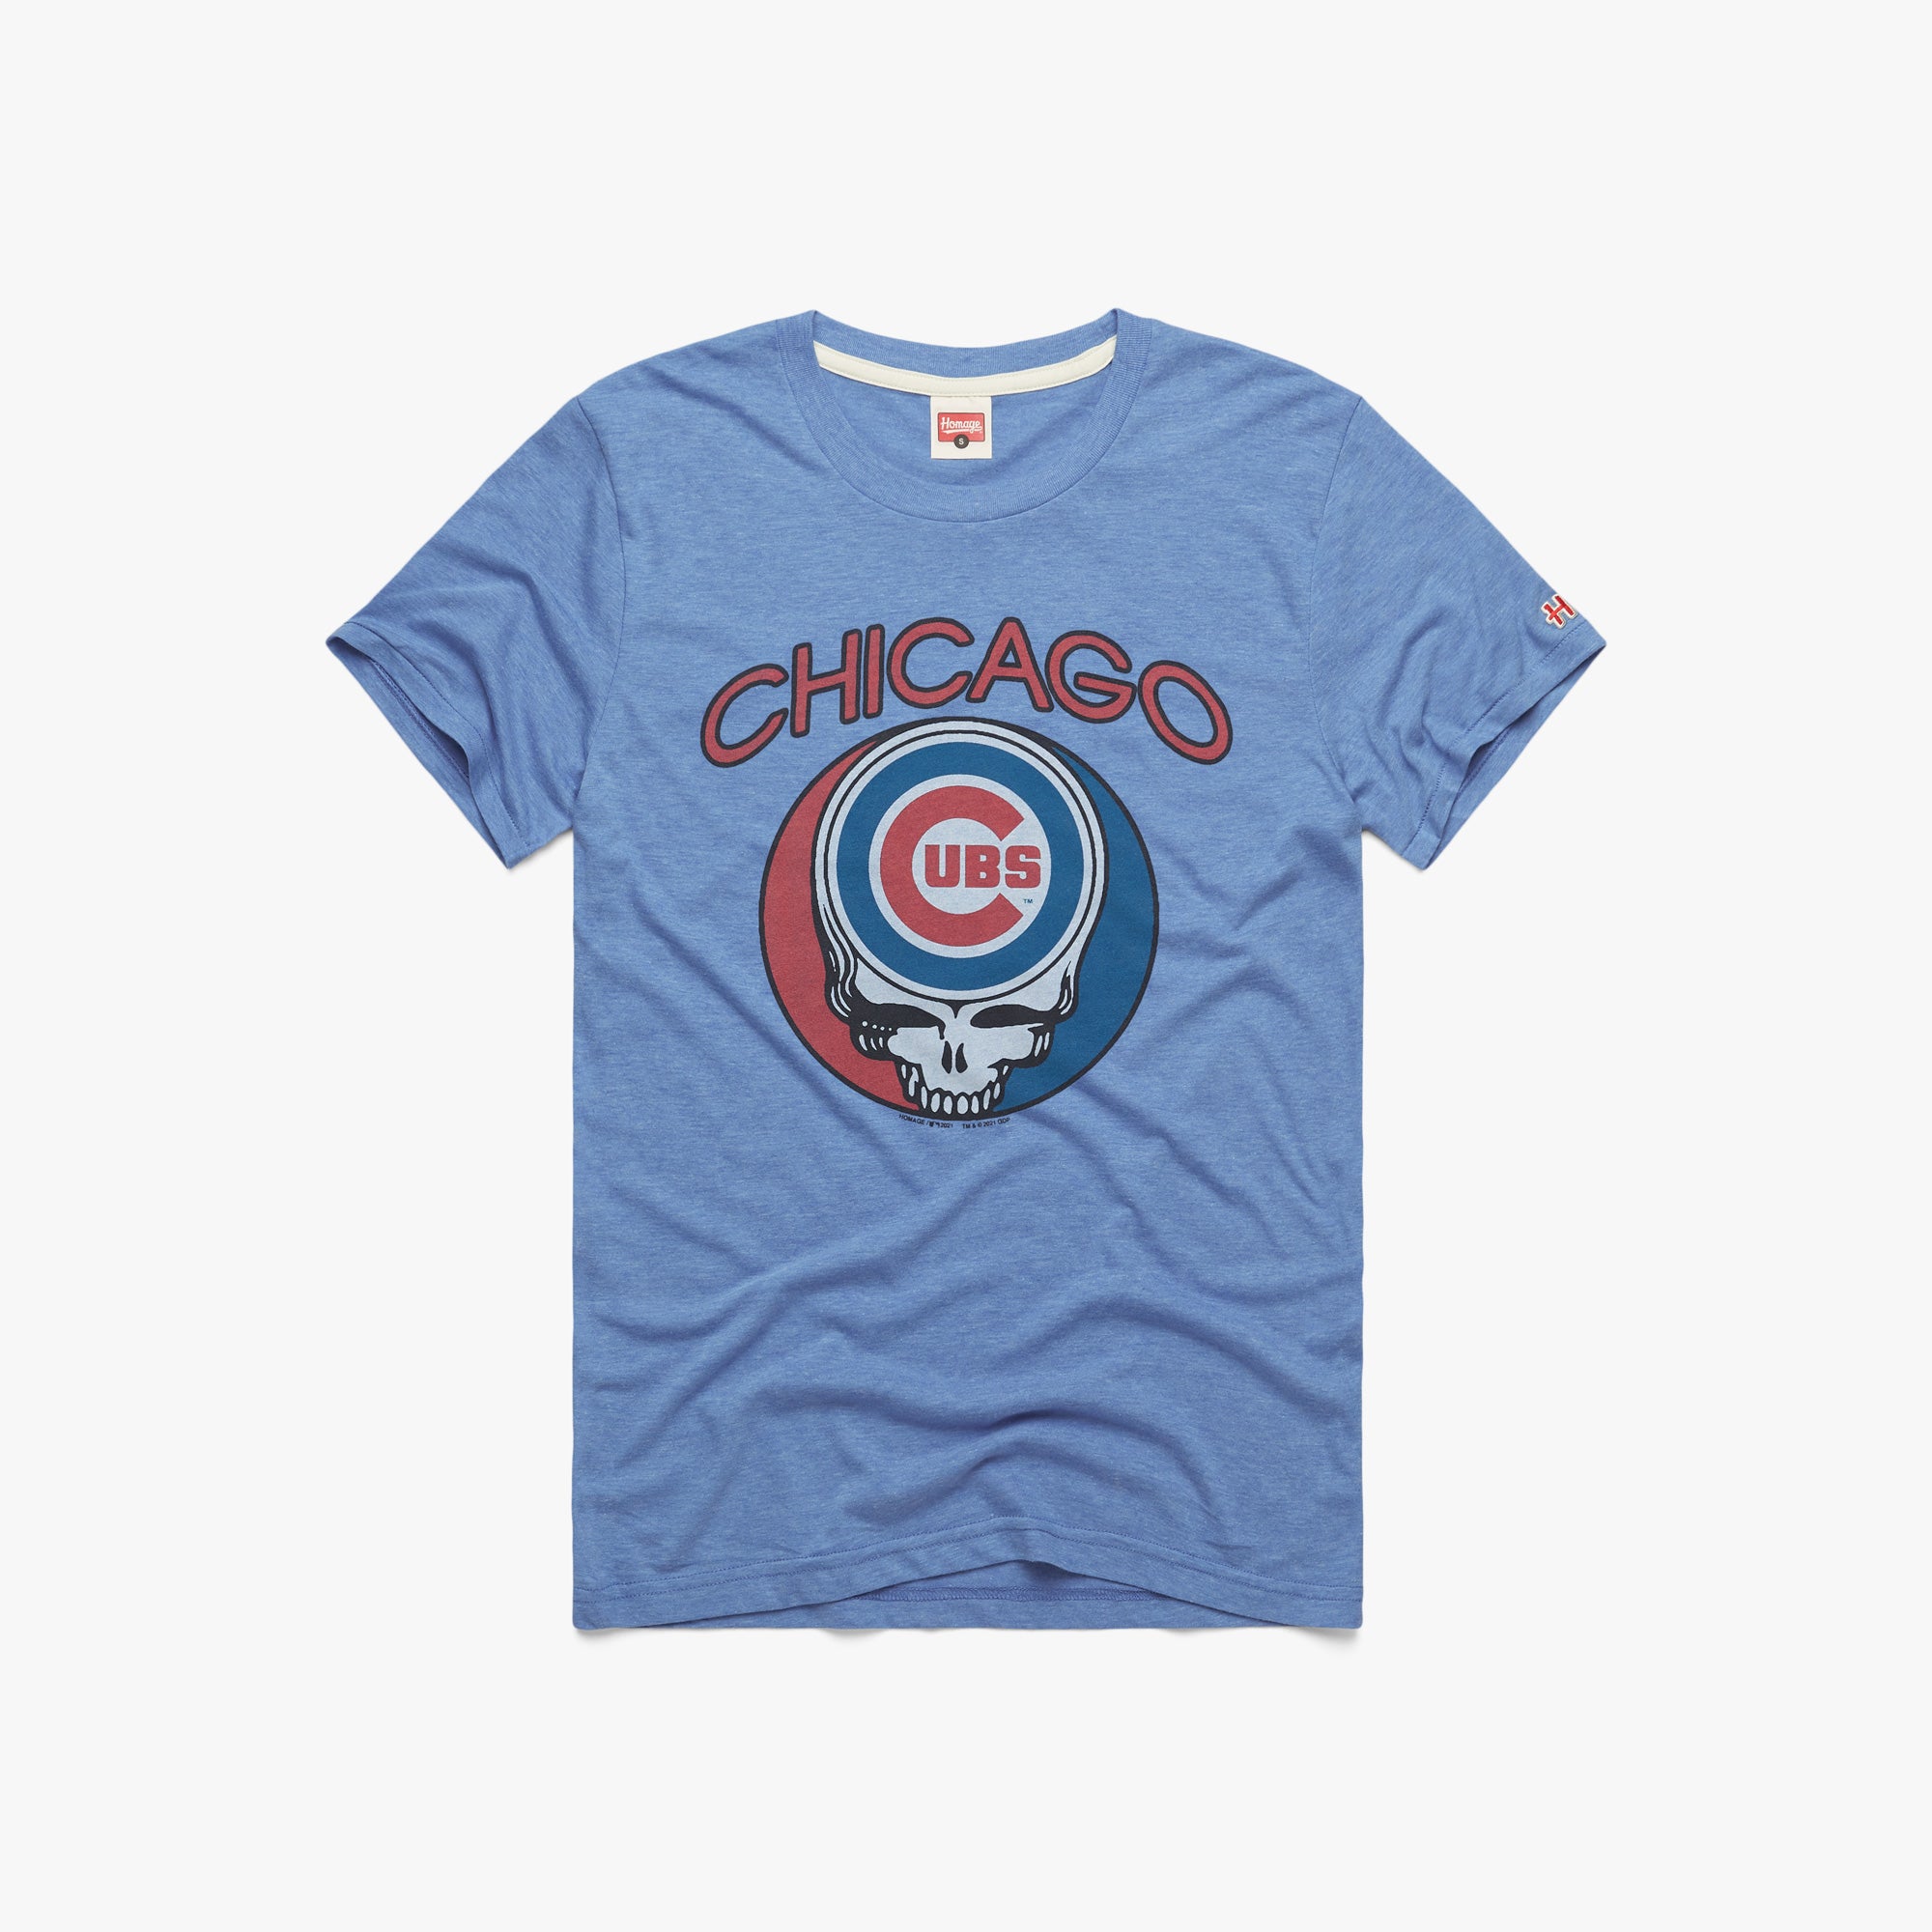 MLB, Shirts, Chicago Cubs Baseball Shirt